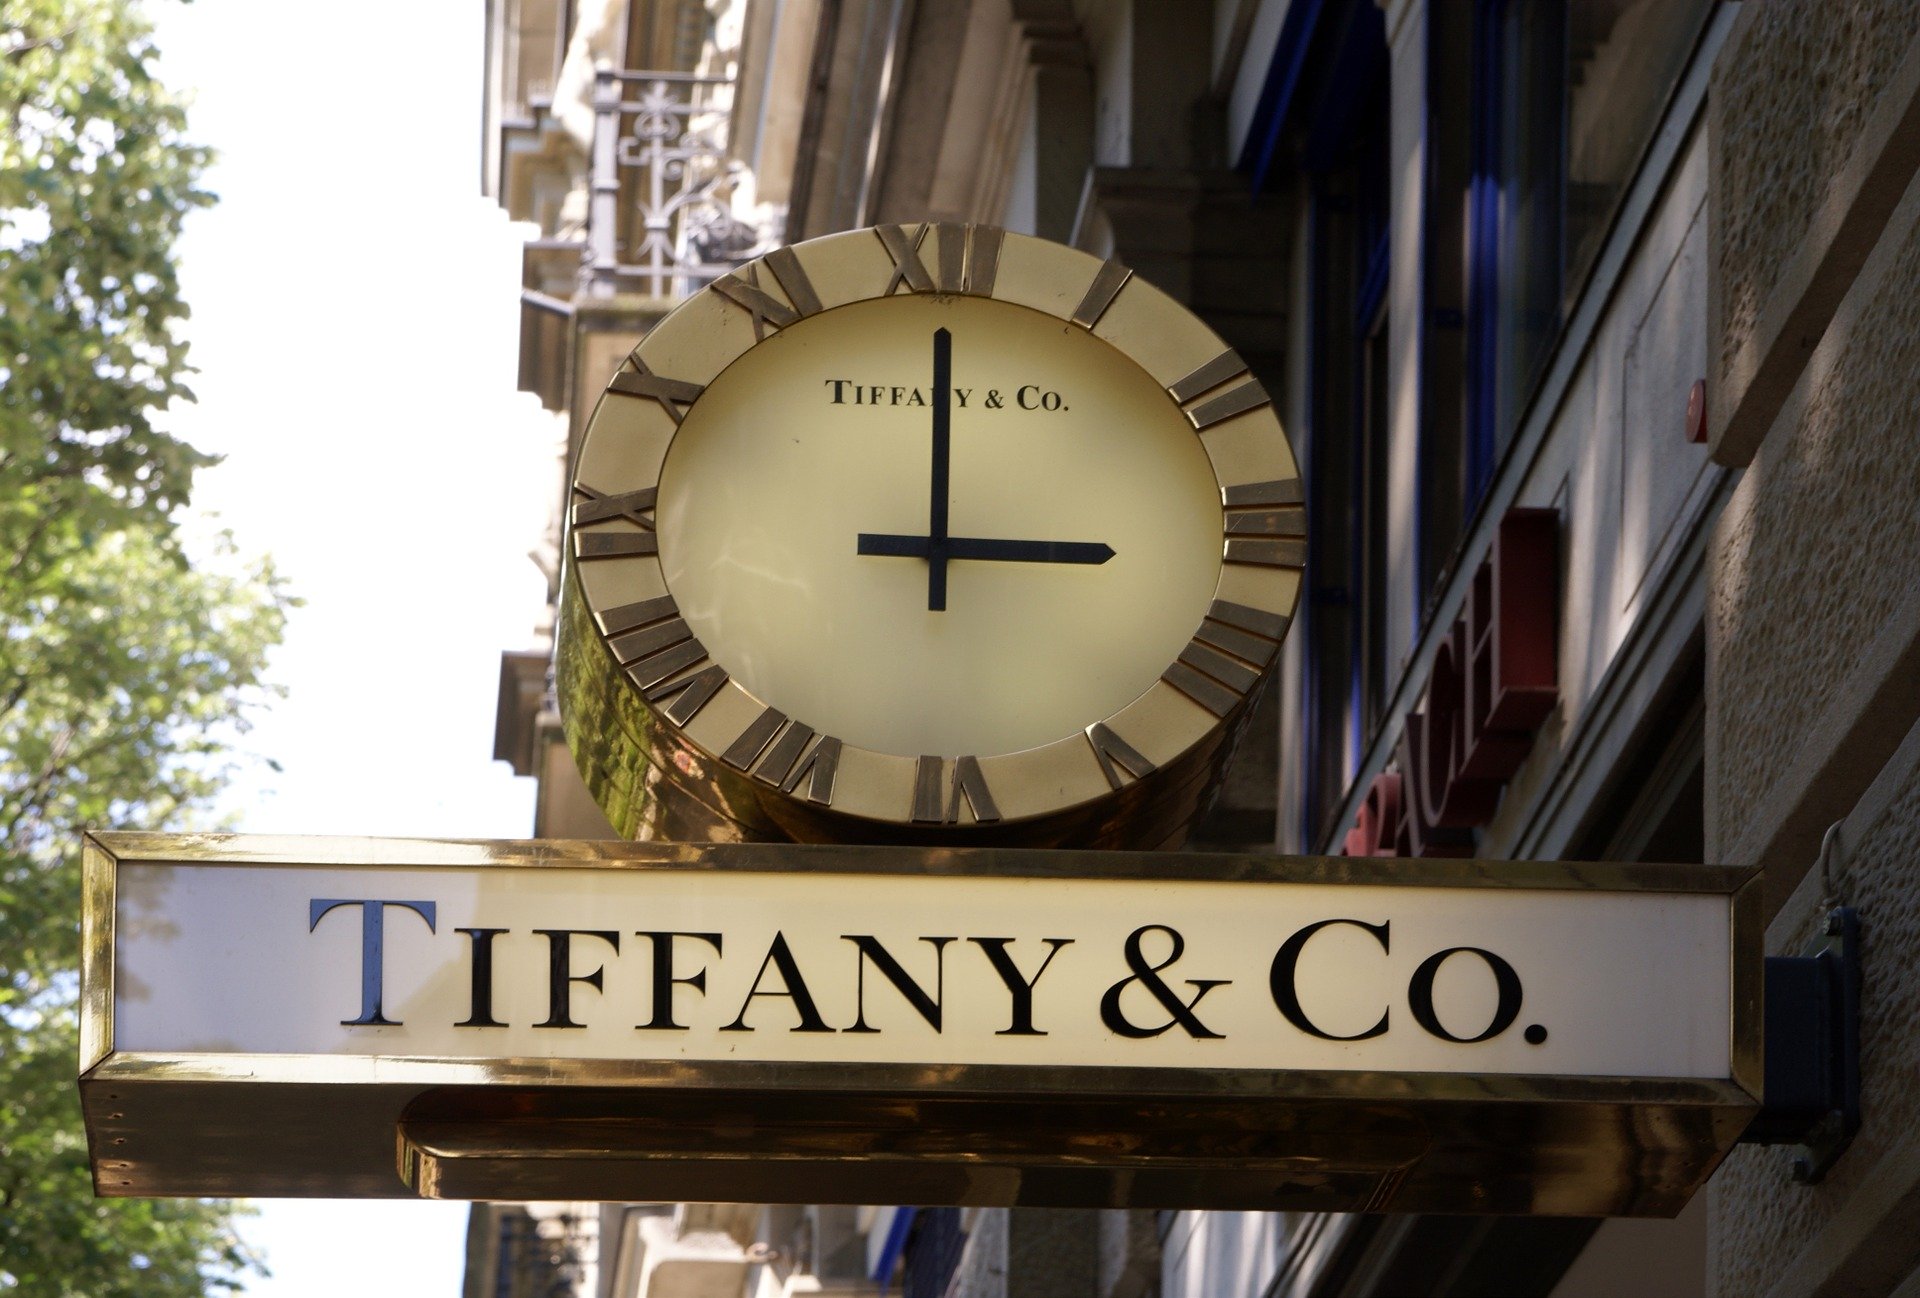 LVMH acquista Tiffany & Co per 16,2 miliardi di dollari